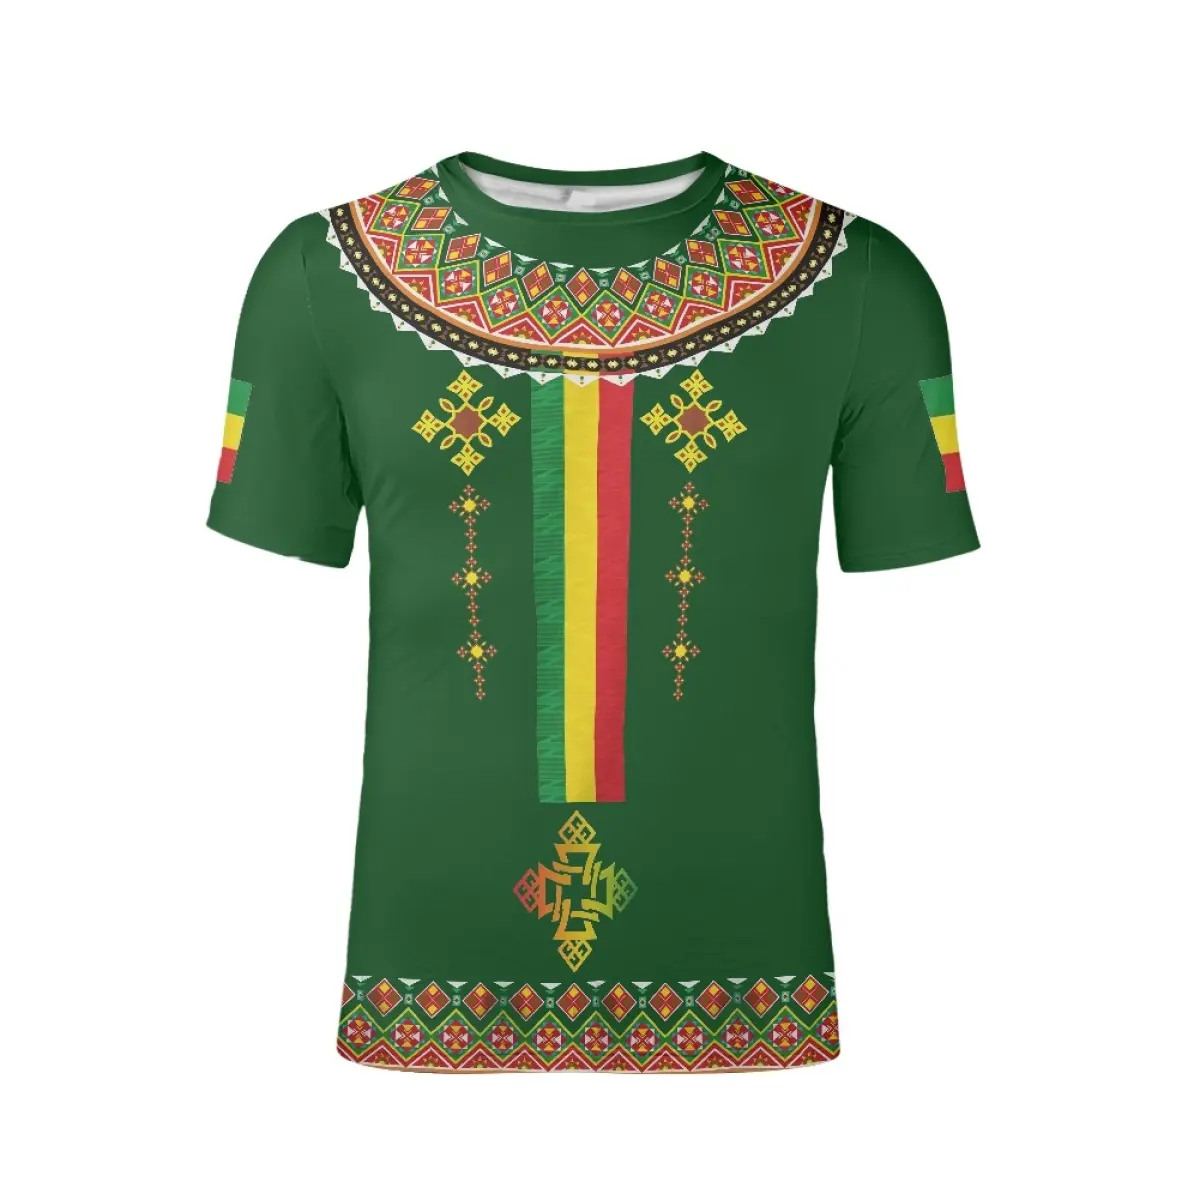 ขายส่งราคาถูกเอธิโอเปีย Habesha ออกแบบเสื้อเชิ้ตผู้ชายขนาดใหญ่ระบายอากาศฉลากส่วนตัวที่กำหนดเองเอธิโอเปียสีเขียวเสื้อยืดลำลอง